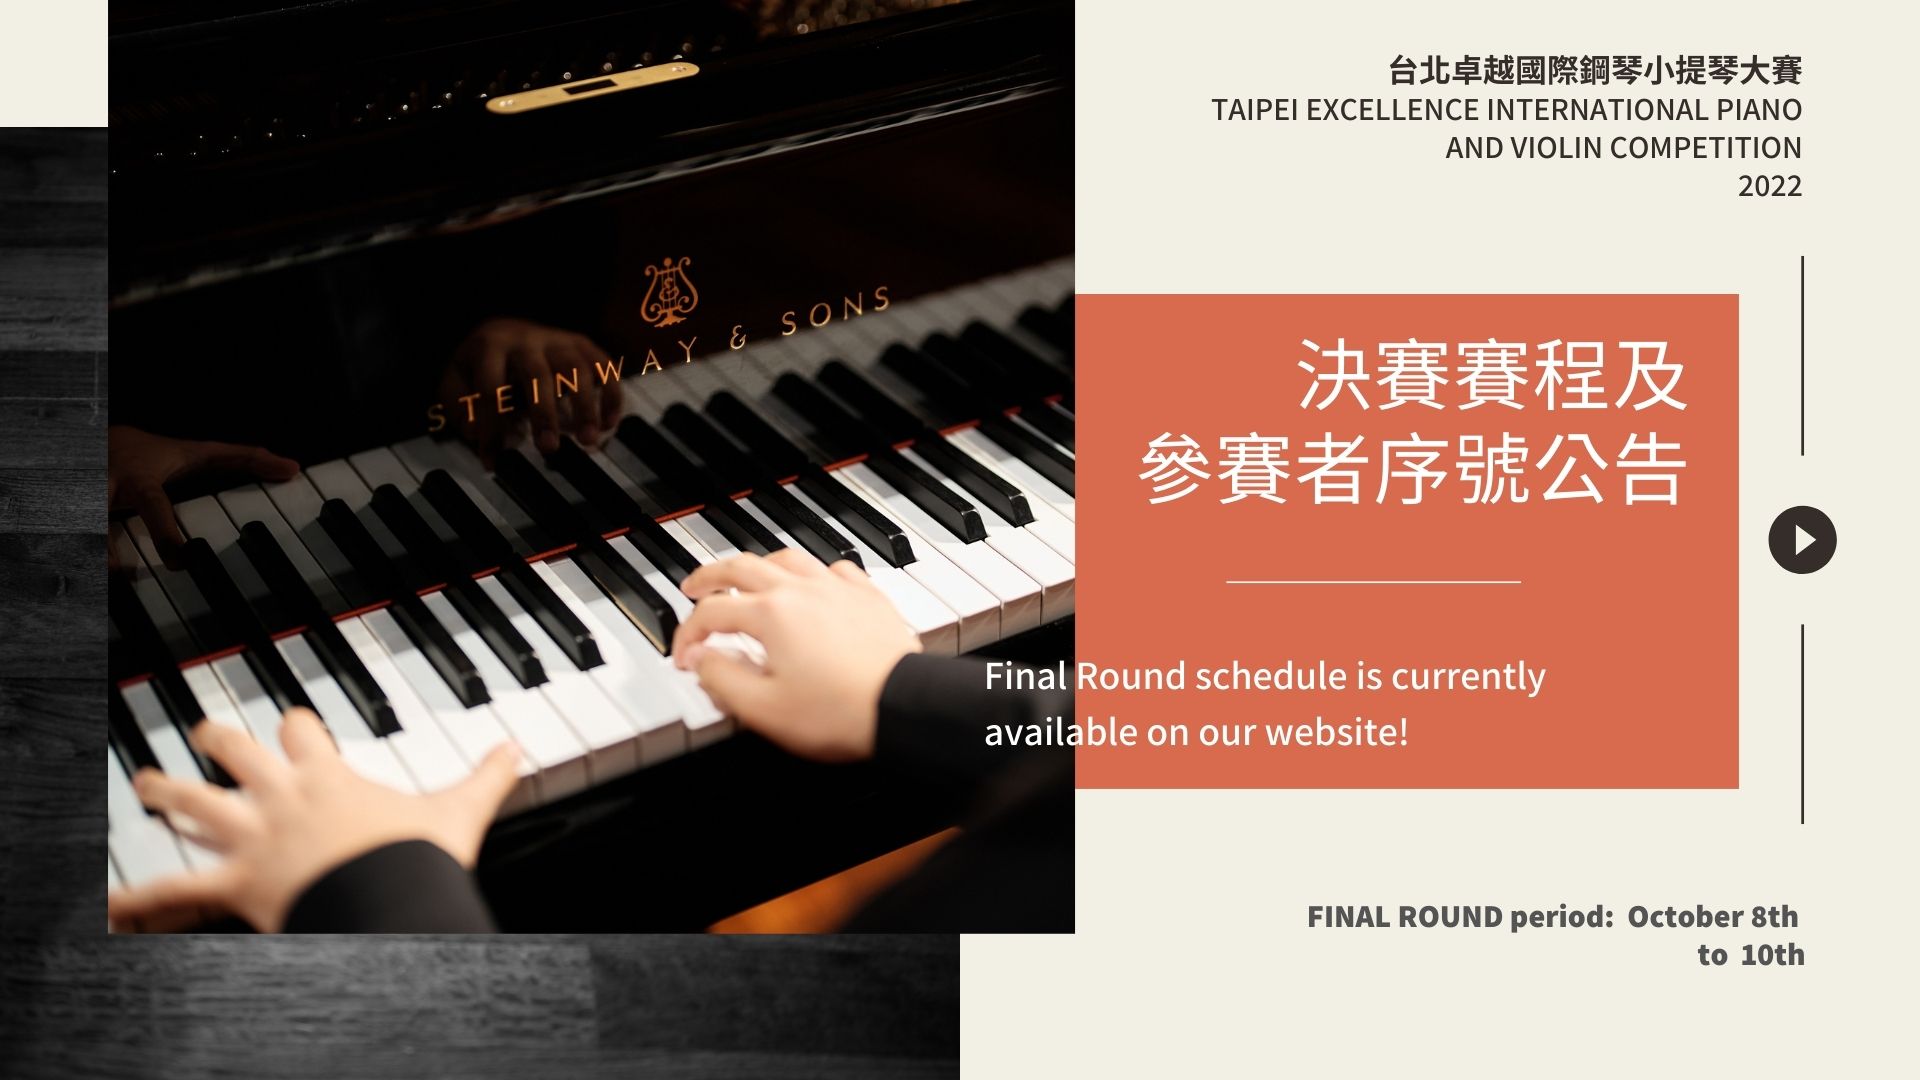 2022台北卓越國際鋼琴小提琴大賽 決賽賽程及參賽者序號公告